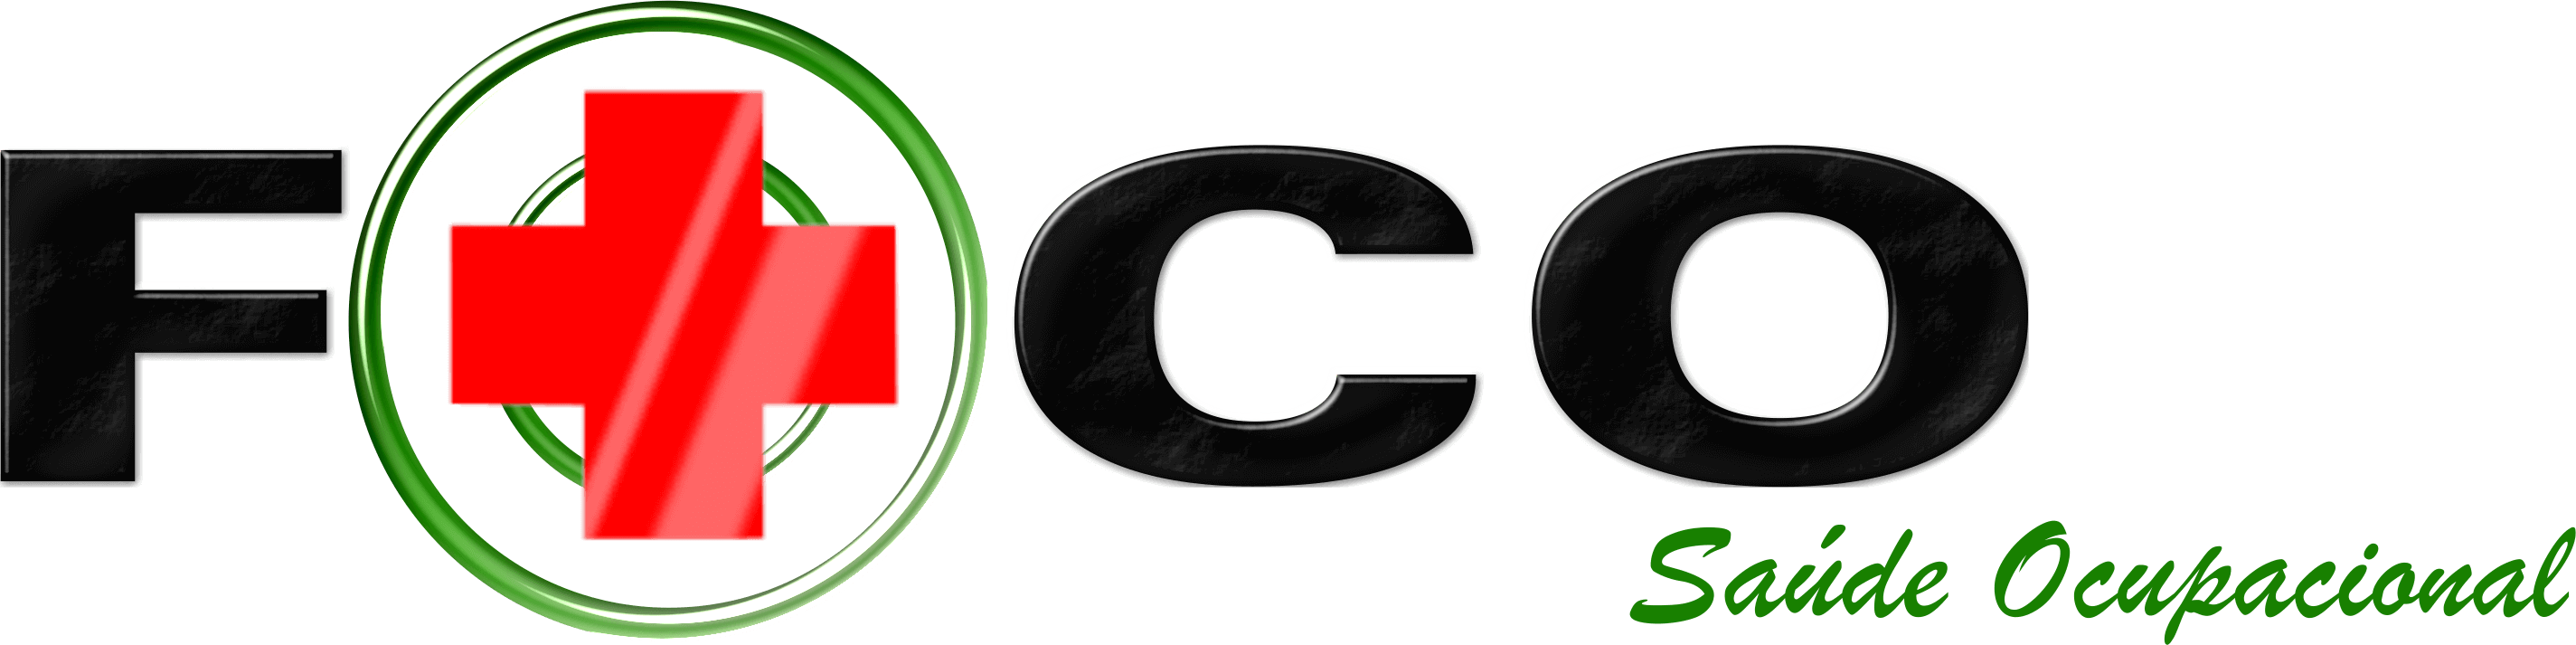 Logo-Foco-Saude Ocupacional